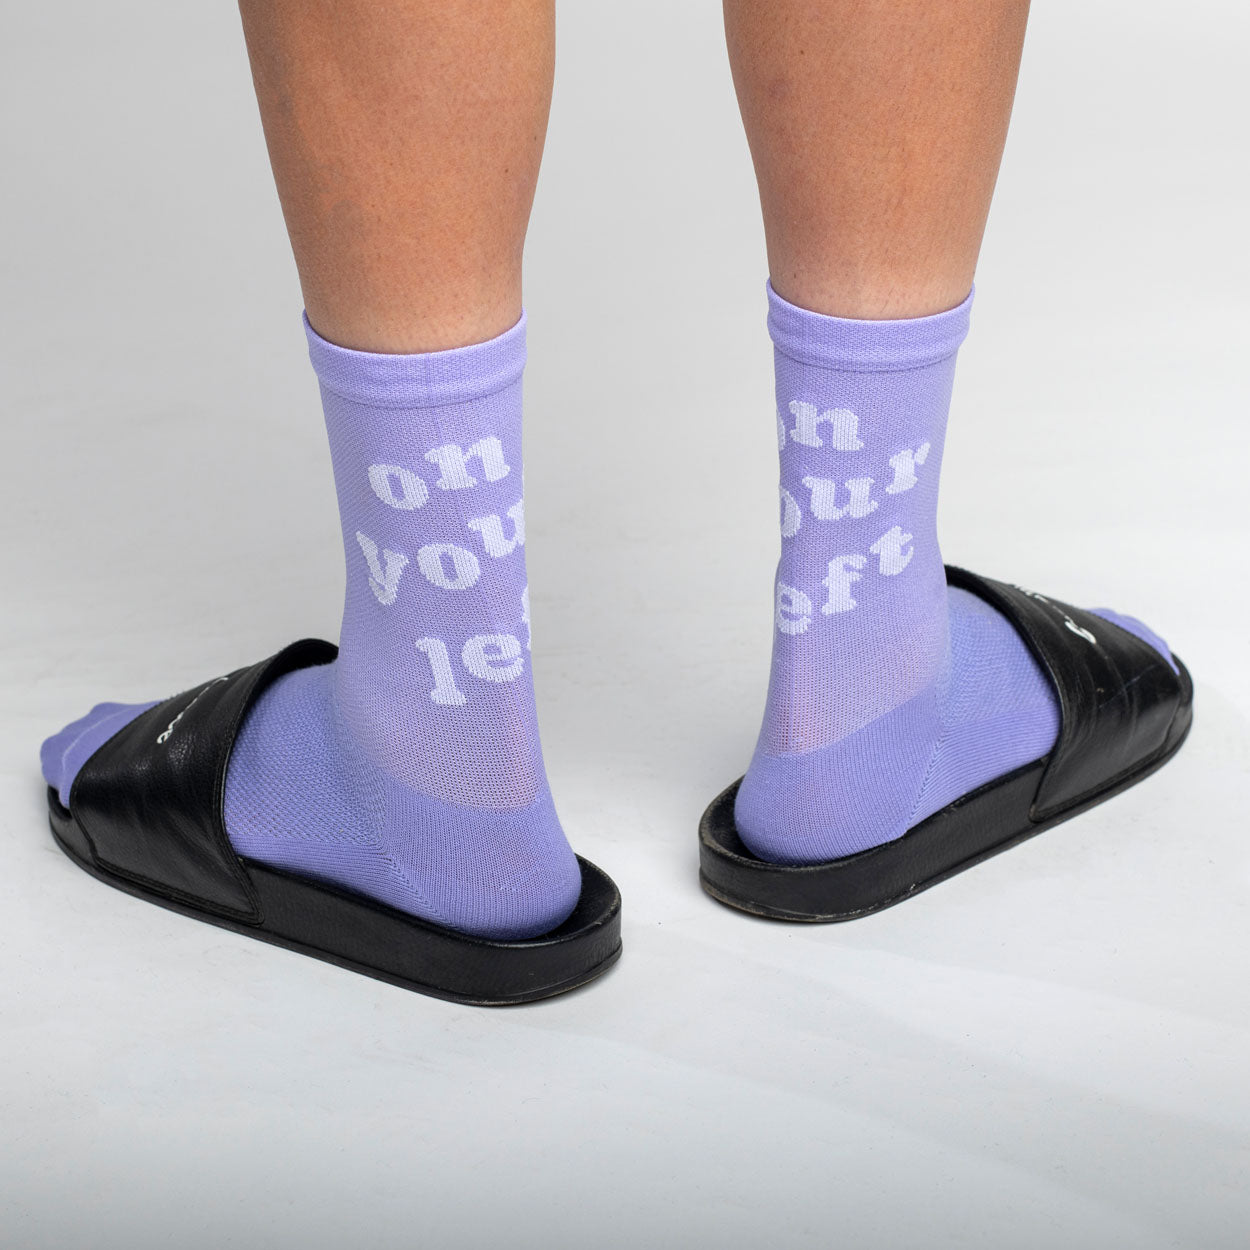 A Lilac Men's Over-the-Calf Sock